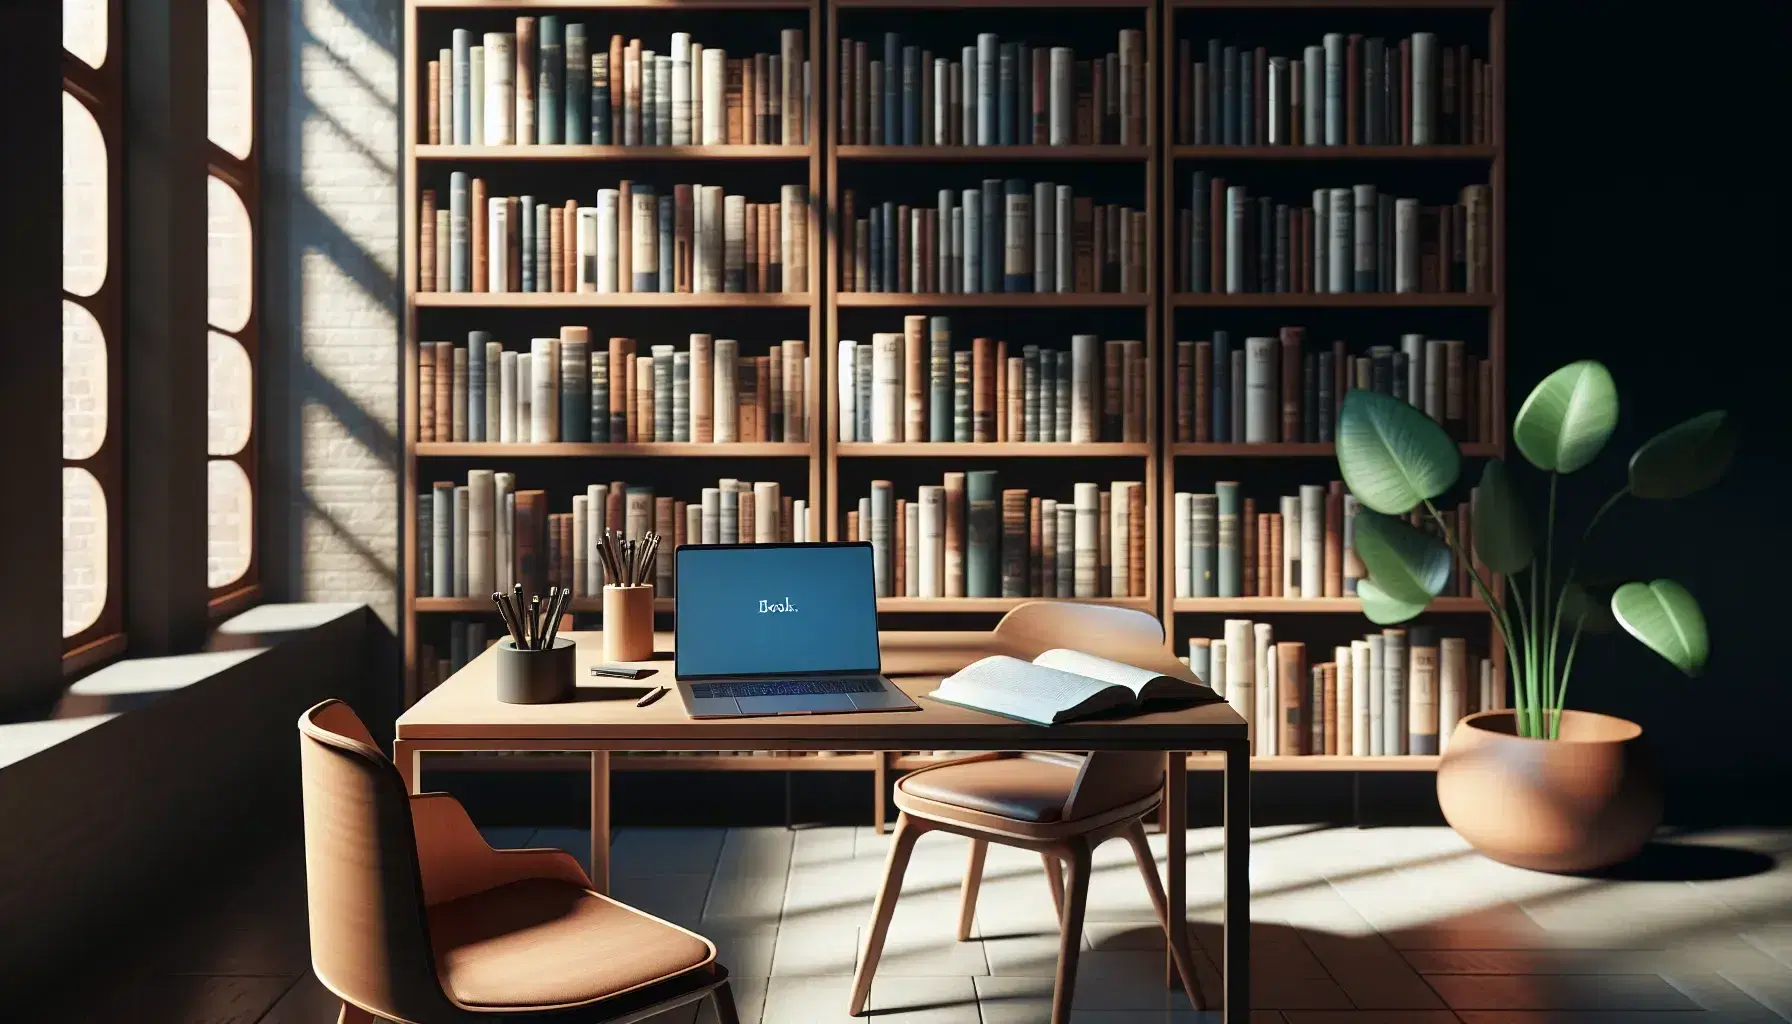 Biblioteca acogedora con estantes de madera llenos de libros, mesa con portátil abierto y cuaderno, luz natural y planta verde.